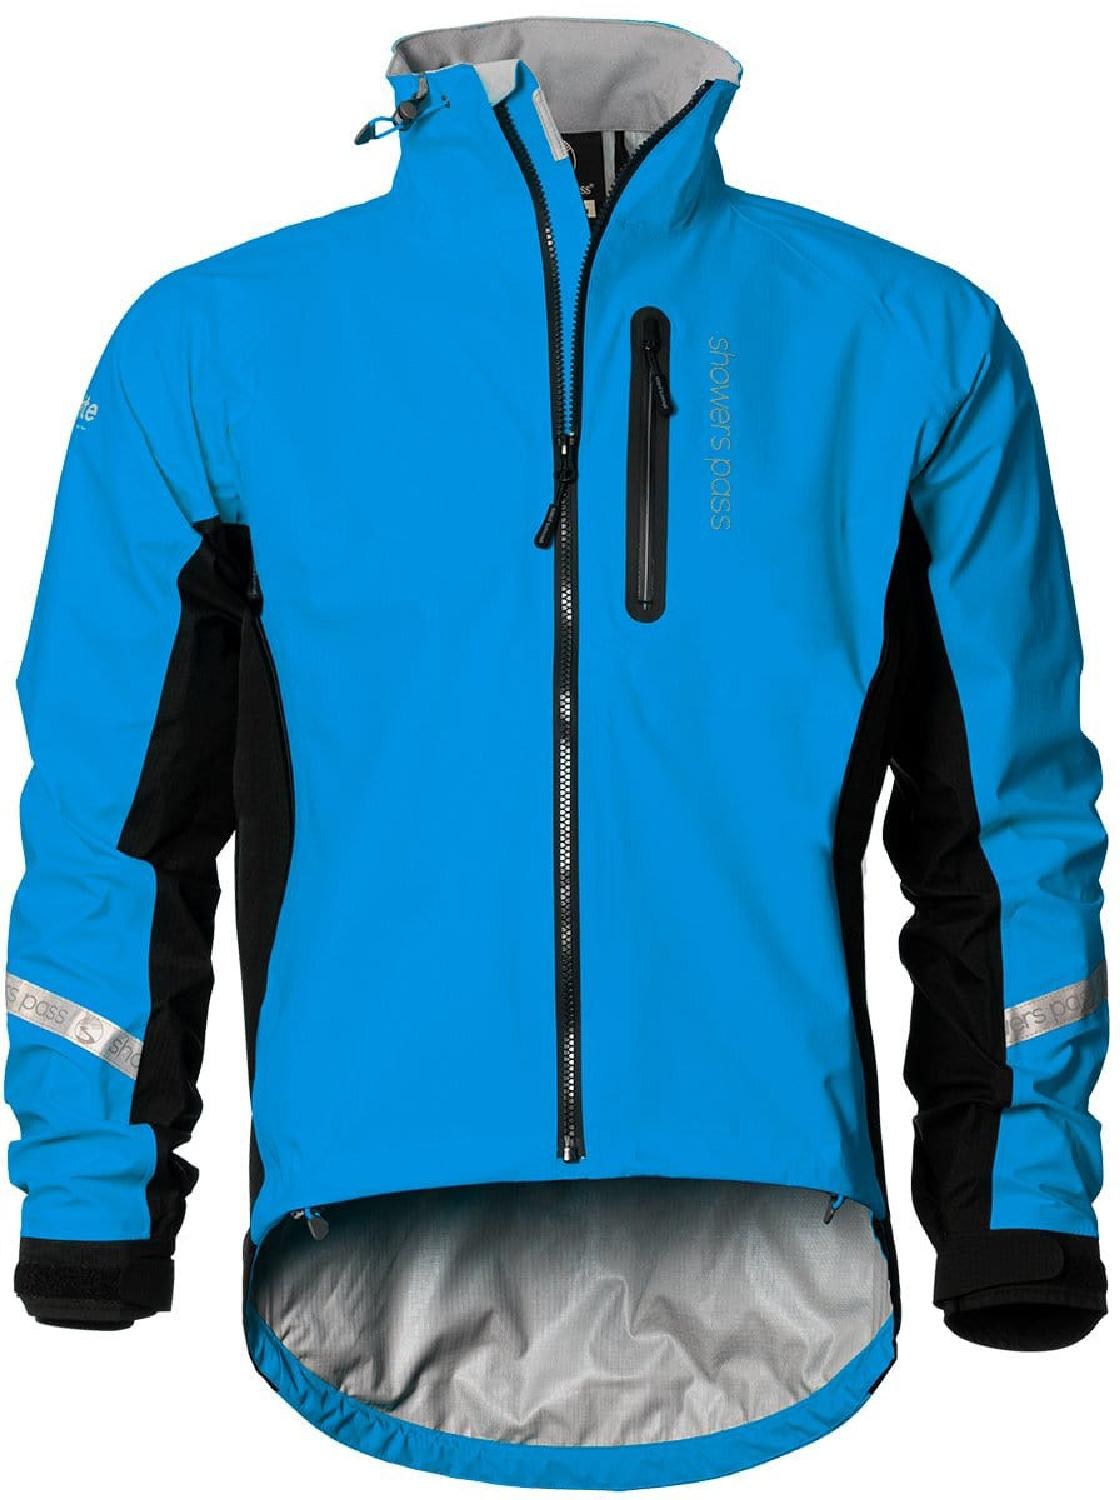 Велосипедная куртка Elite 2.1 — мужская Showers Pass, синий фото